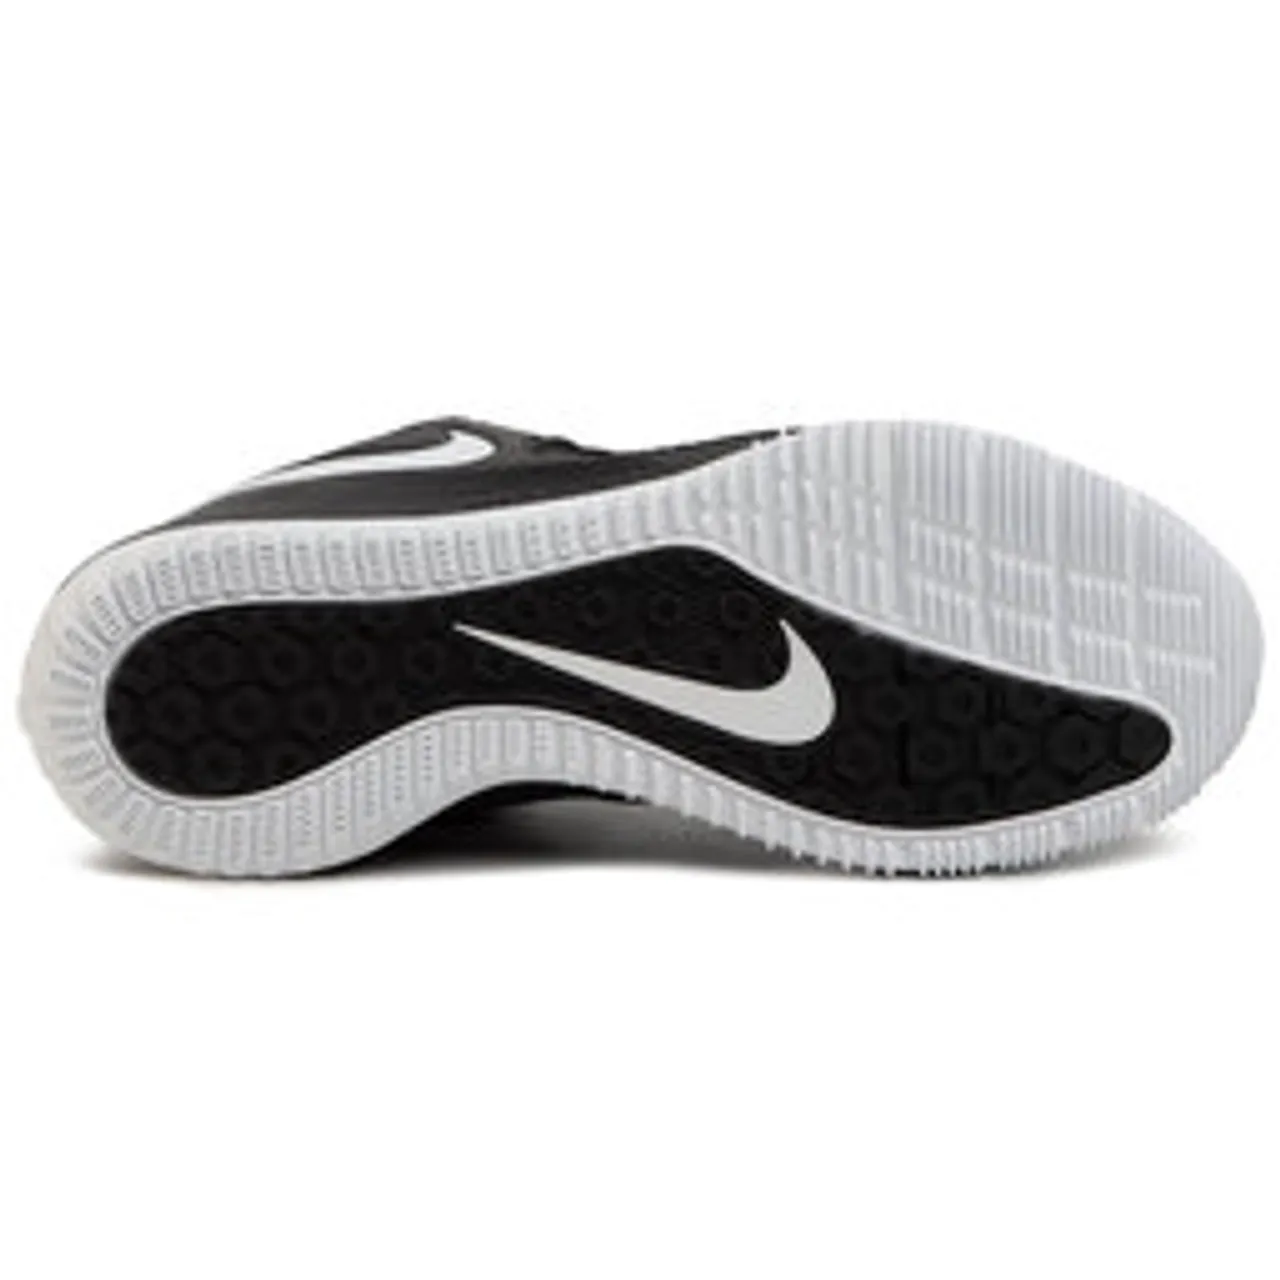 Schuhe Nike Zoom Hyperace 2 AA0286 001 Black/White